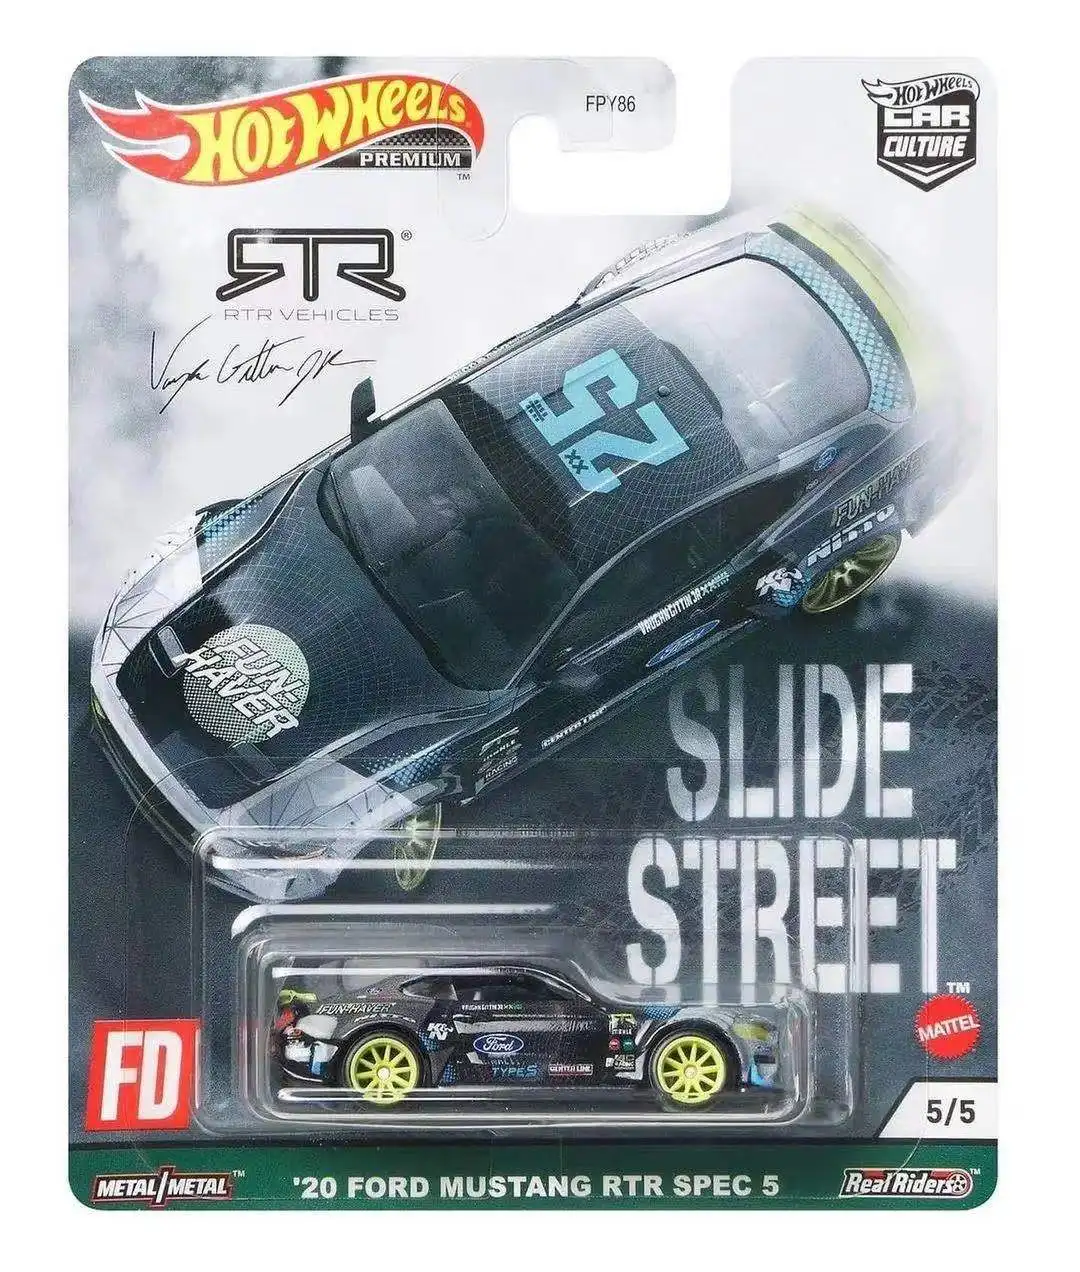 Оригинальная модель автомобиля Hot Wheels, горка культуры, улица 1 стоп, литые под давлением 1/64 Subaru Ford Mustang, детские игрушки для мальчиков, подарок на день рождения